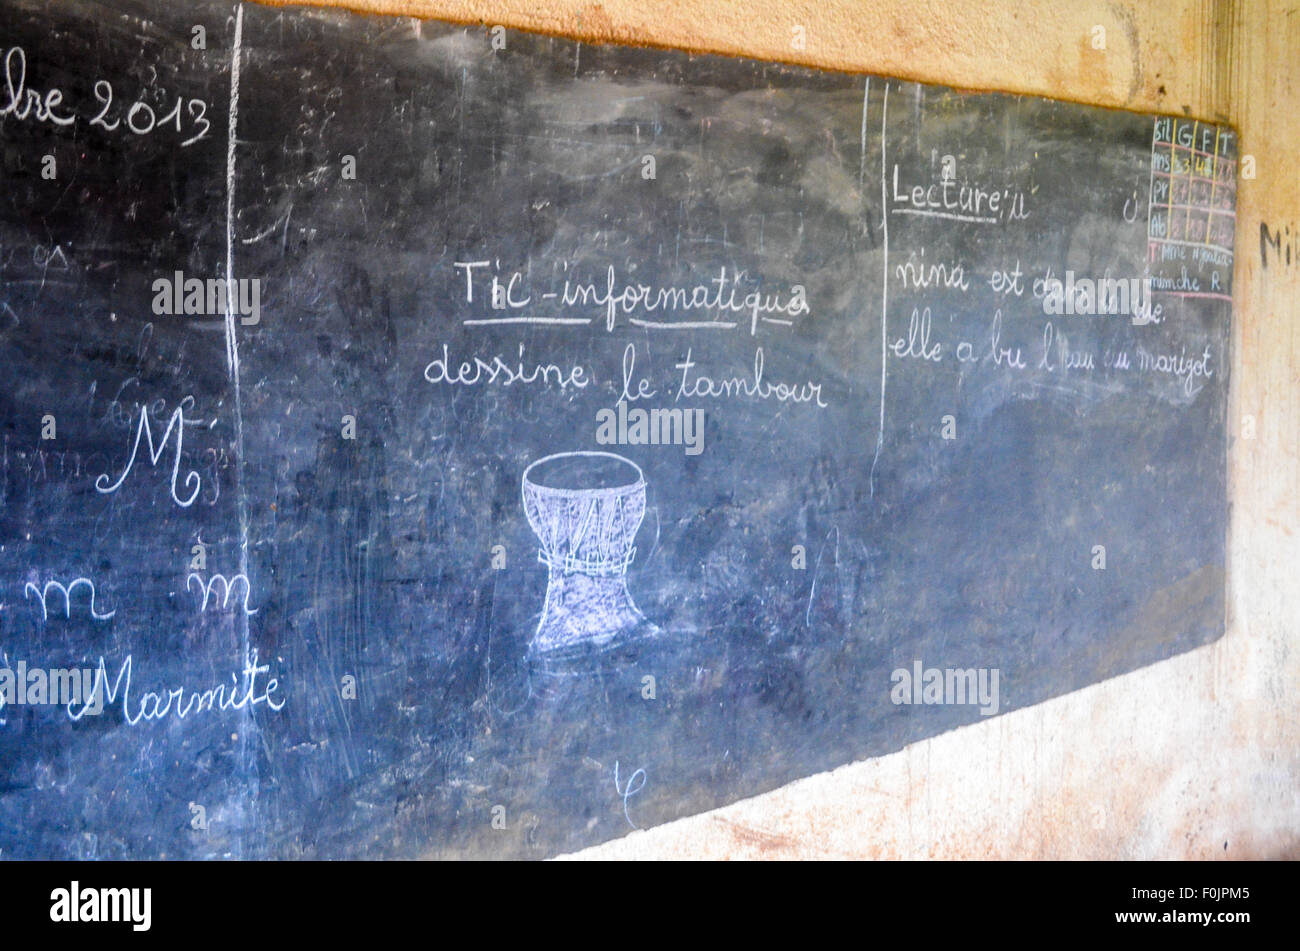 Schwarzes Brett in einer afrikanischen Dorfschule zeigt eine Trommel unter dem Titel "IKT - Informatik" und Kursteilnehmer, die Trommel ziehen Fragen. Stockfoto